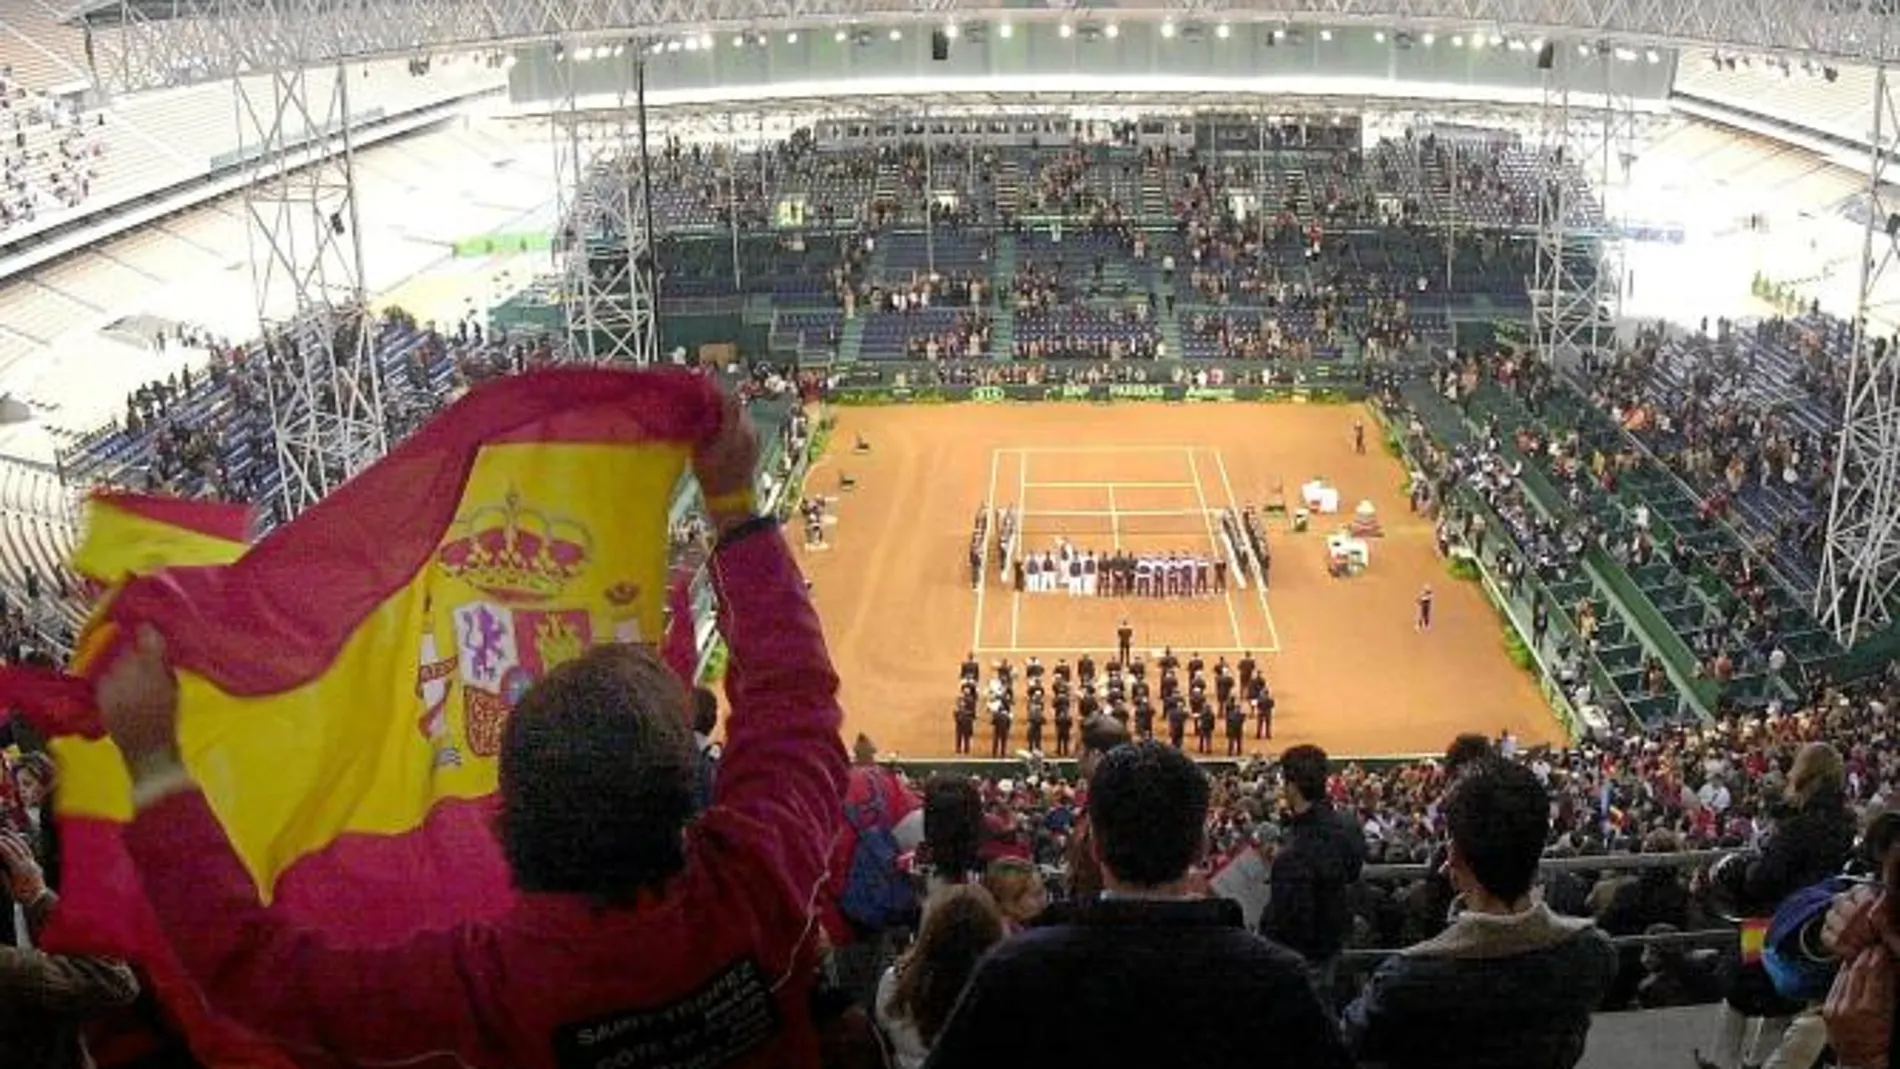 La Cartuja, con una capacidad para 25.000 espectadores, ya acogió la final de 2004 con rotundo éxito